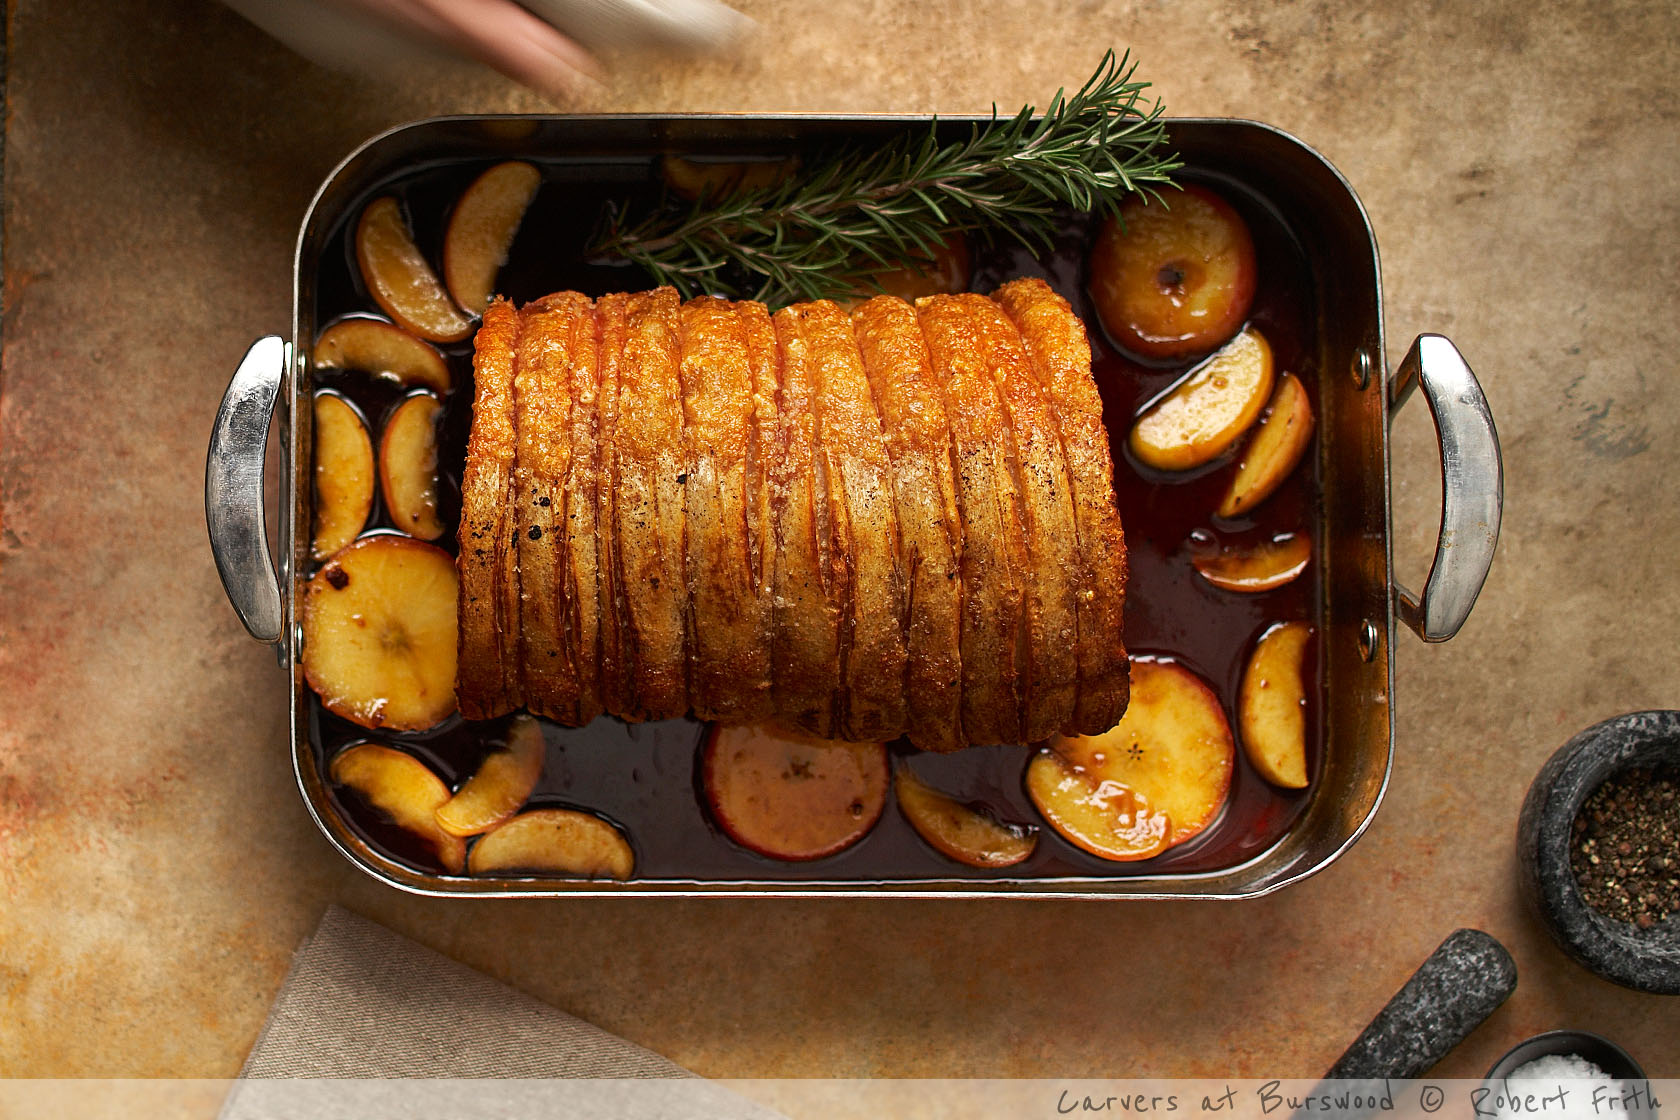 Burswood Carvers Roast Pork